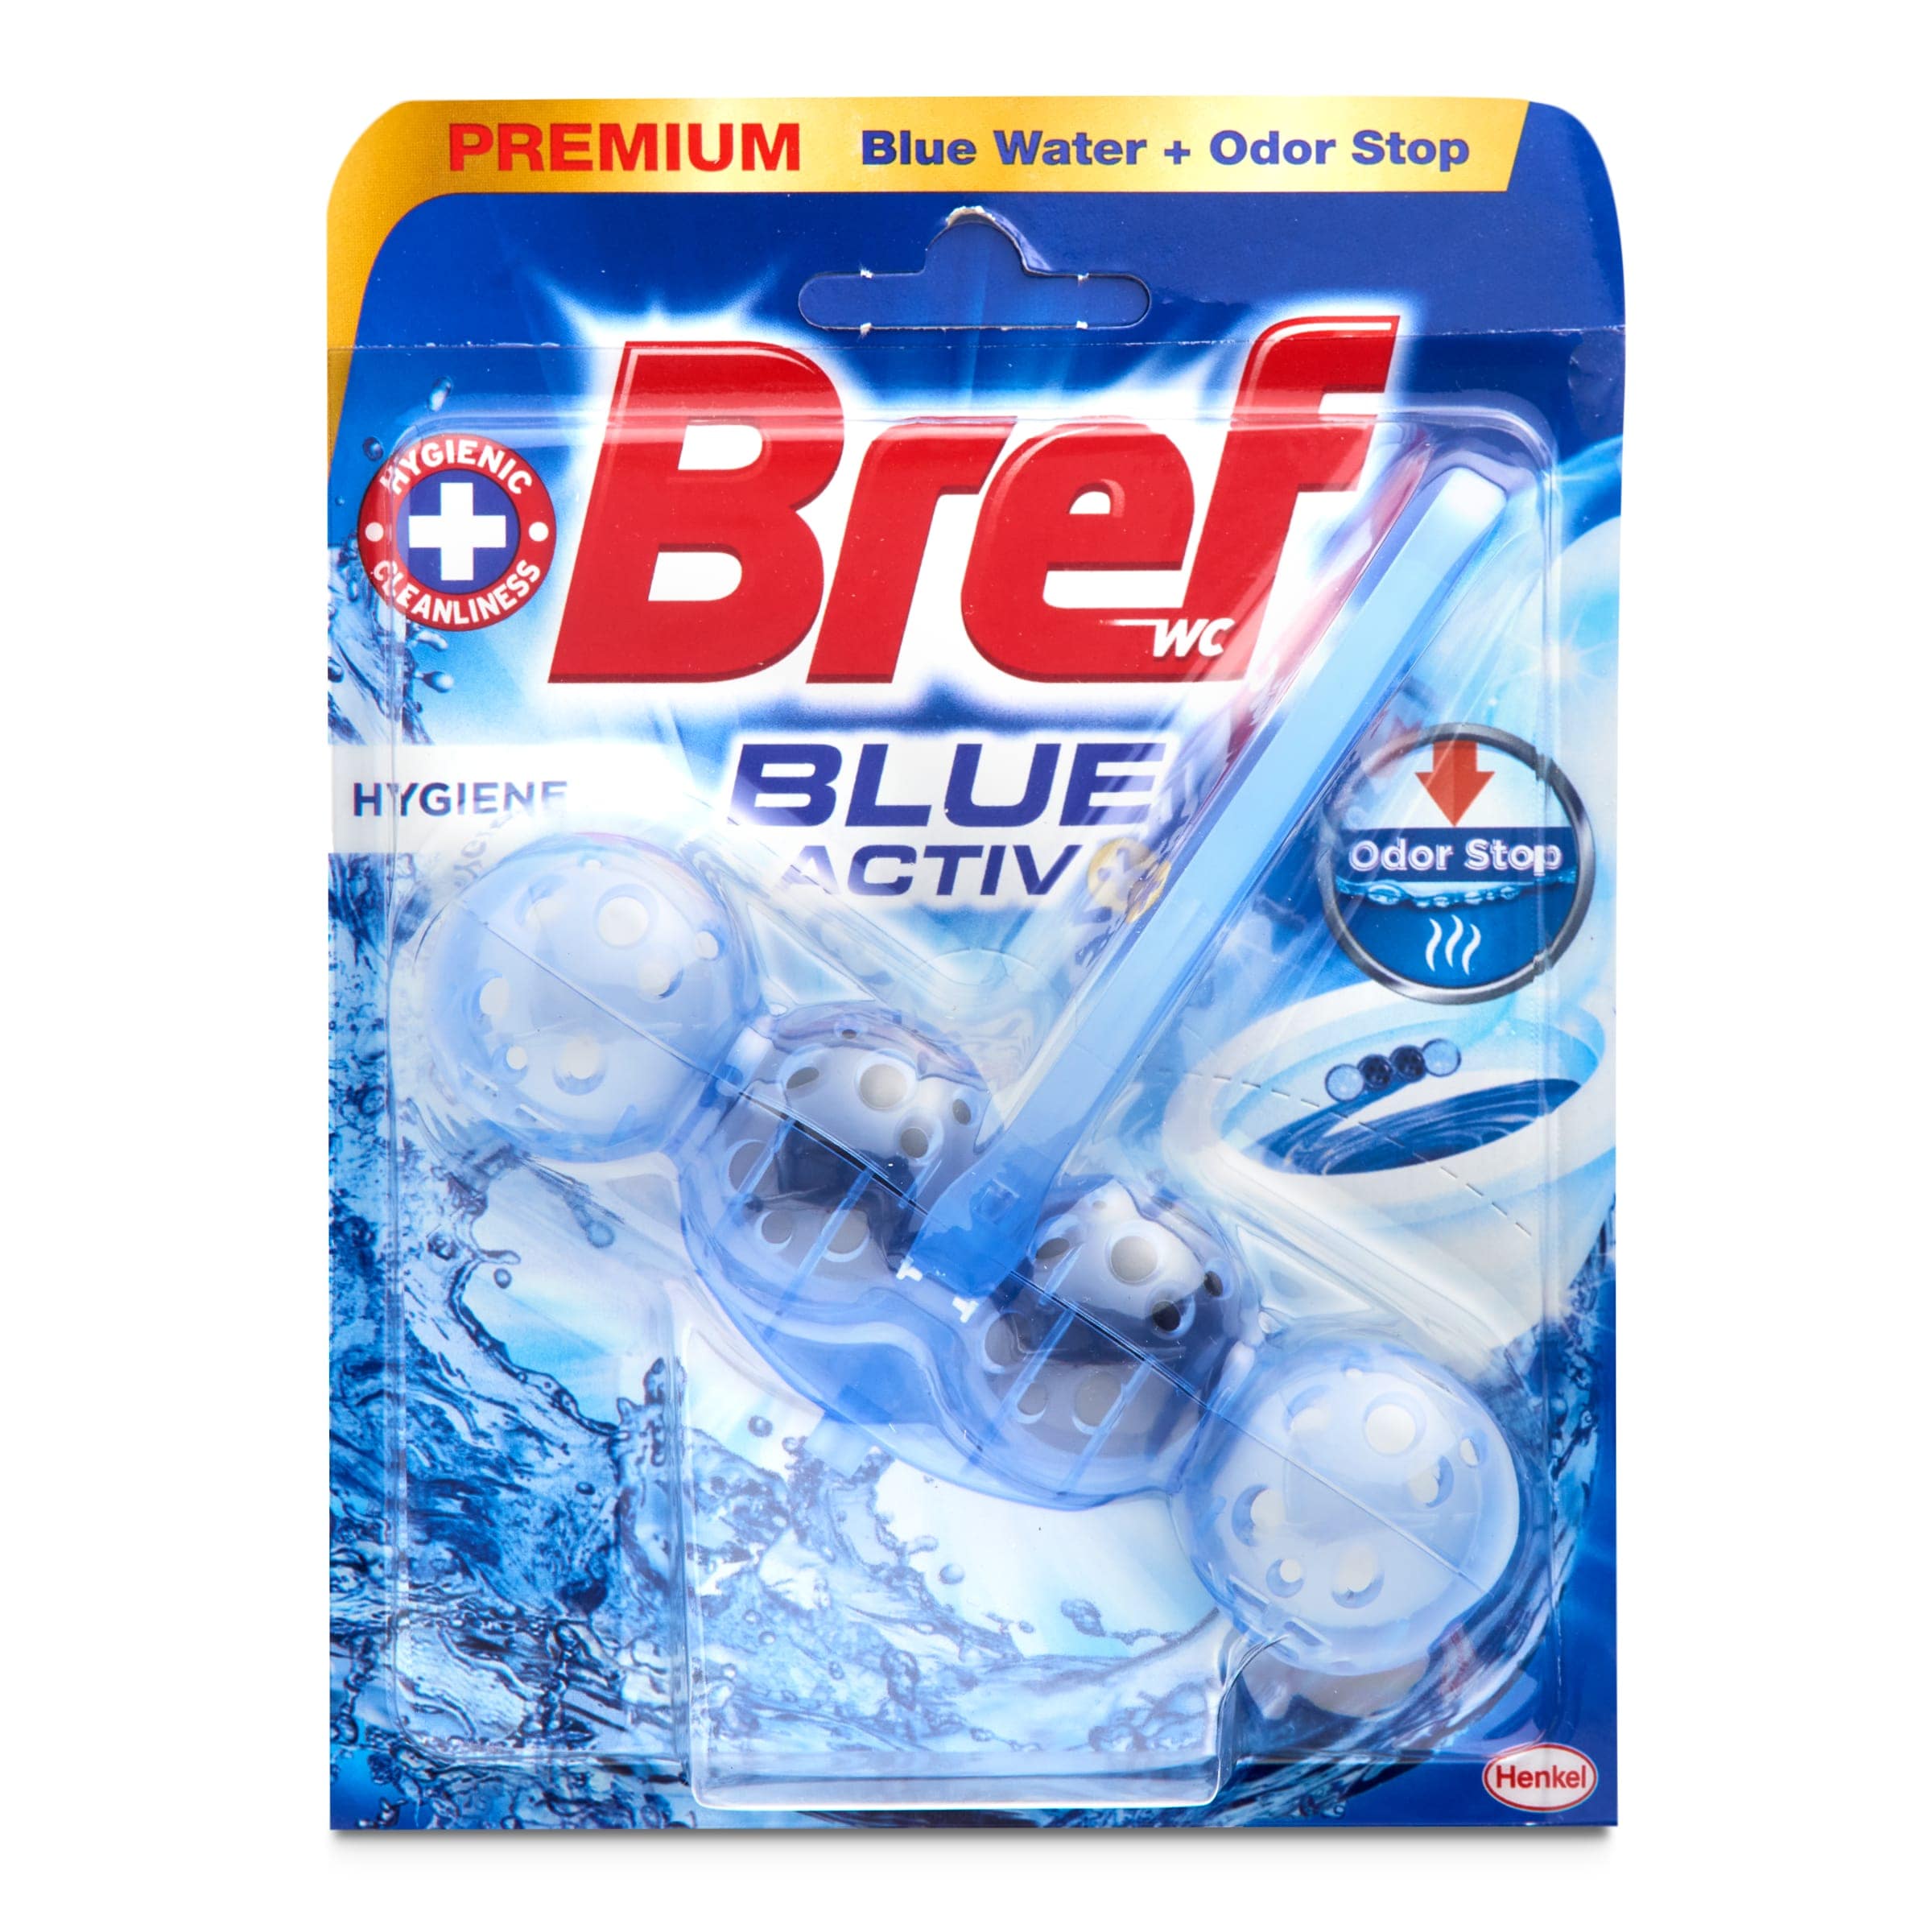 Block wc azul poder activo Bref blister 1 unidad - Supermercados DIA